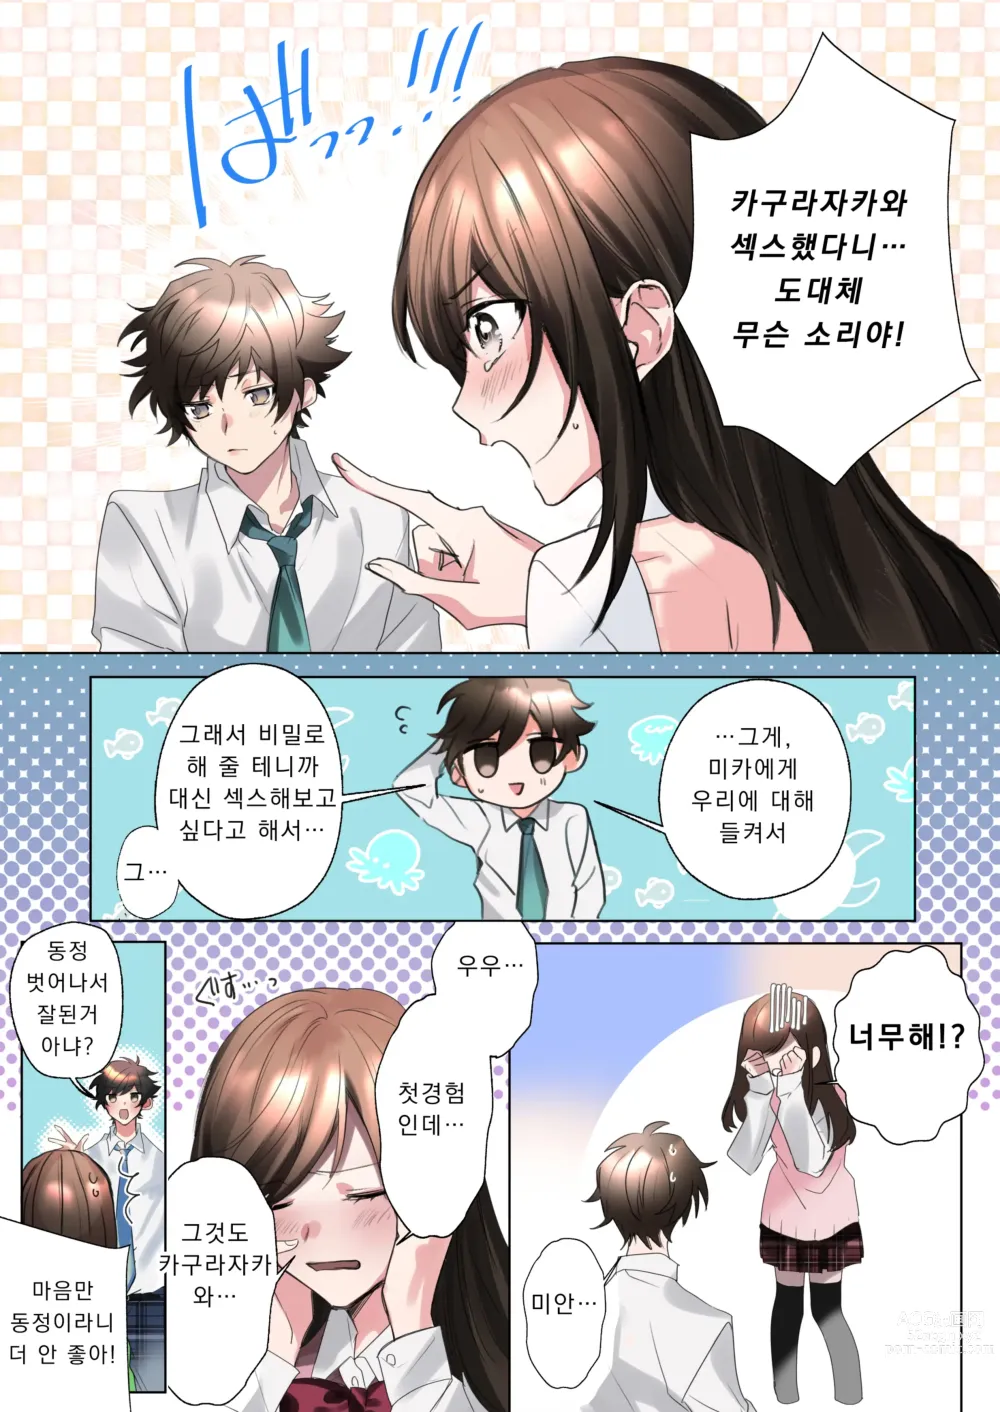 Page 6 of doujinshi 클래스메이트와 뒤바뀌어버린 나의 야한 삼각관계!?